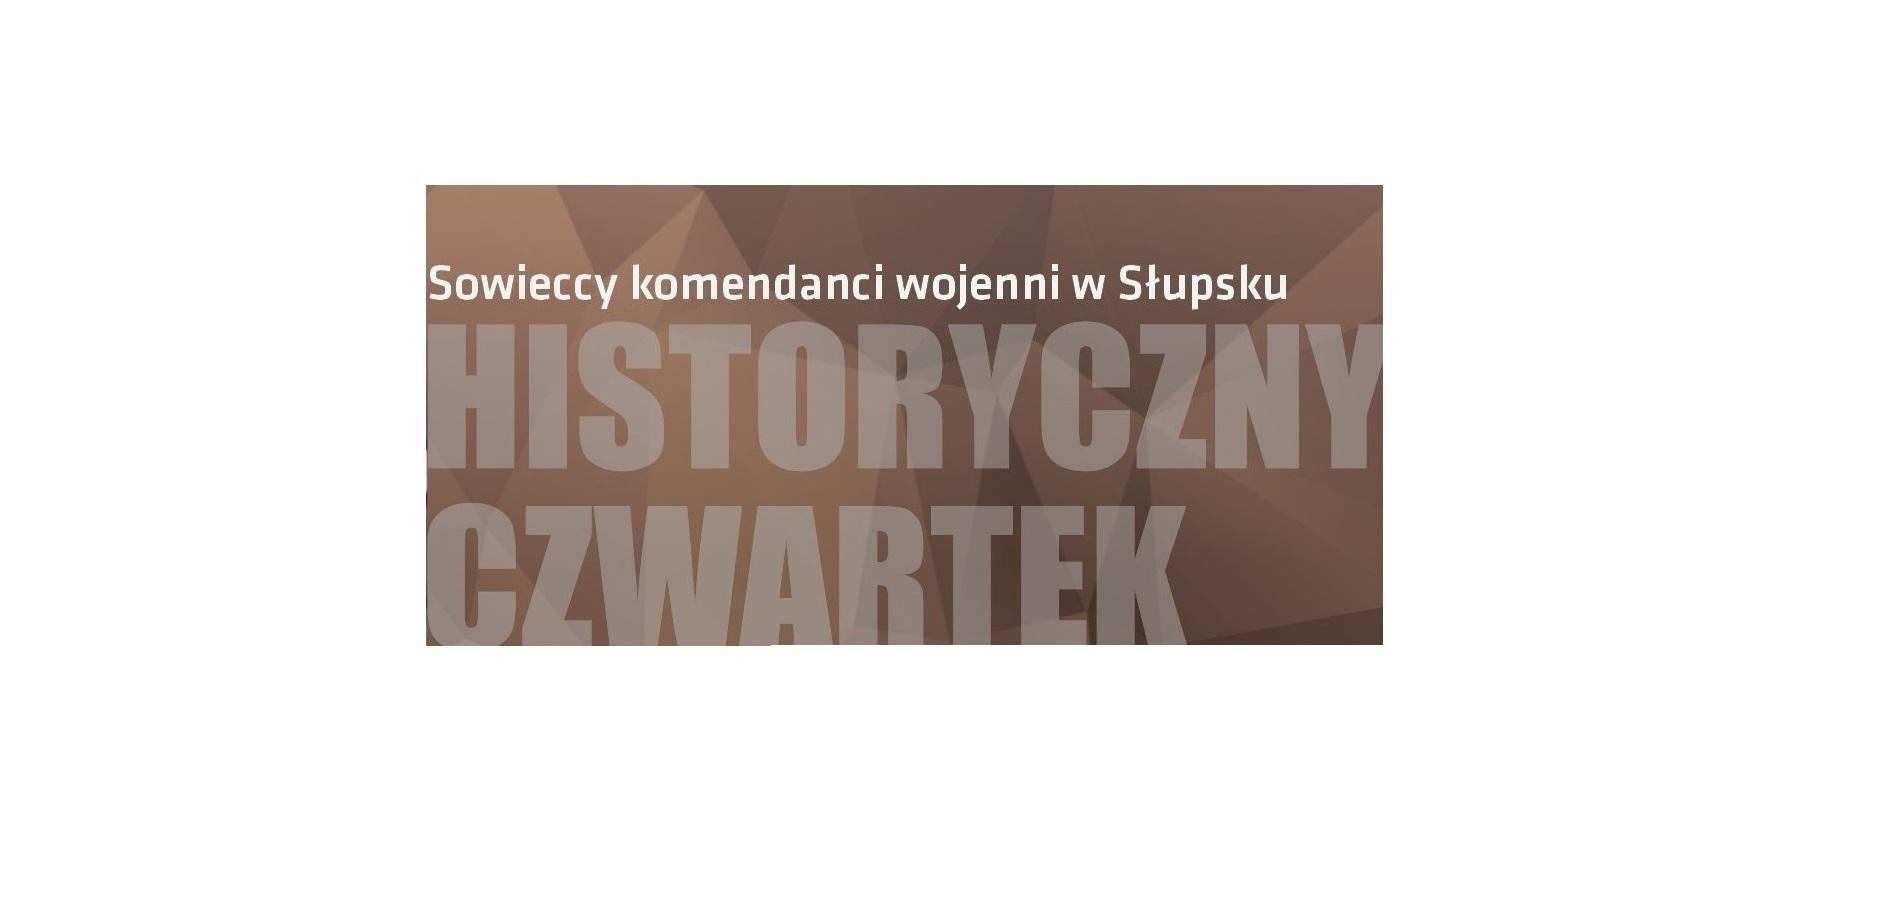 Bałtycka Galeria Sztuki Współczesnej zaprasza na kolejne spotkanie on-line z cyklu Historyczne Czwartki